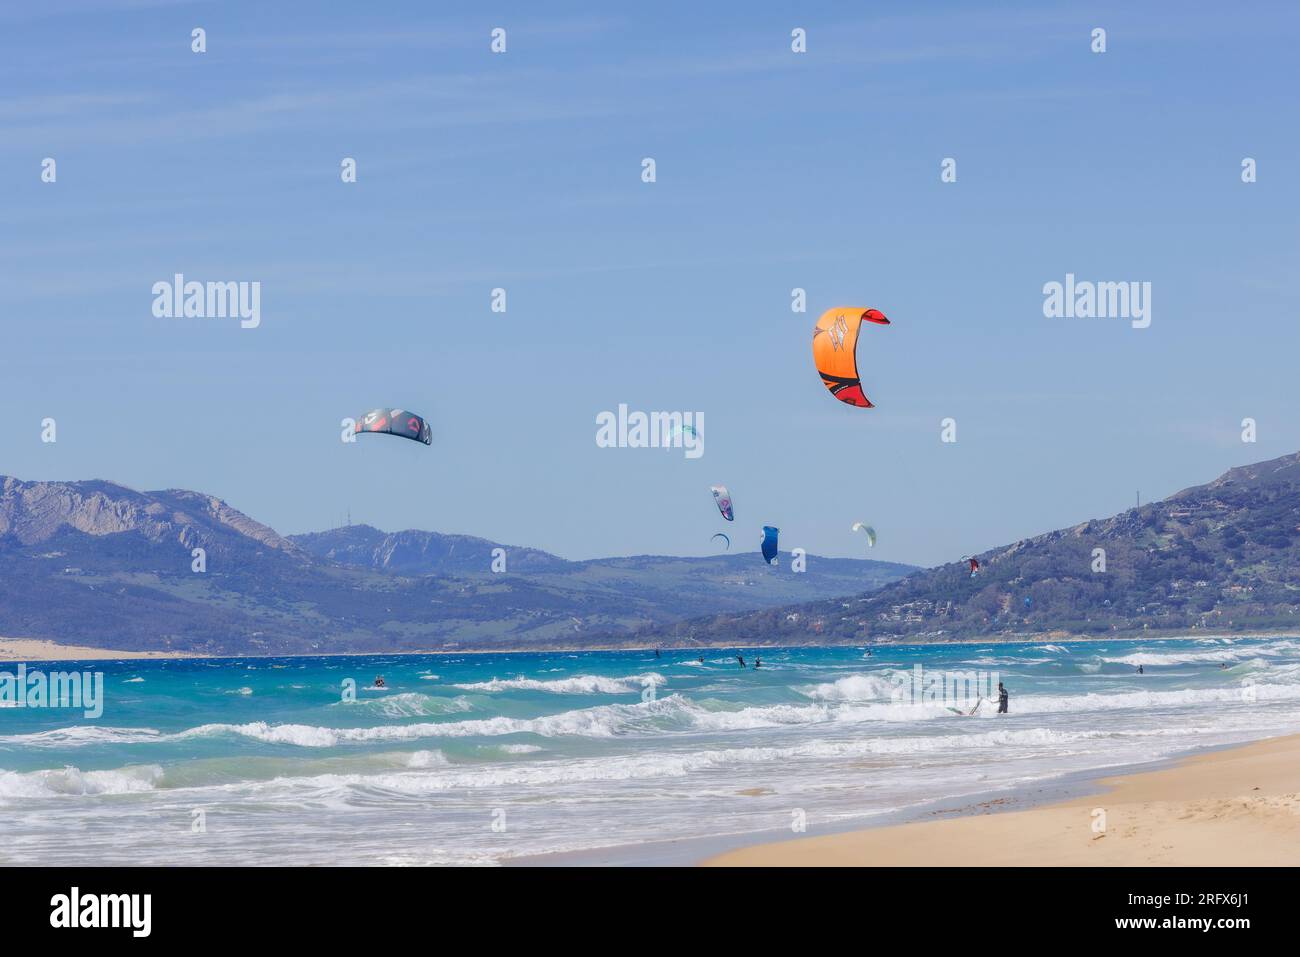 Kite-surf au large de la plage de Los lances, Tarifa, Costa de la Luz, province de Cadix, Andalousie, sud de l'Espagne. Banque D'Images